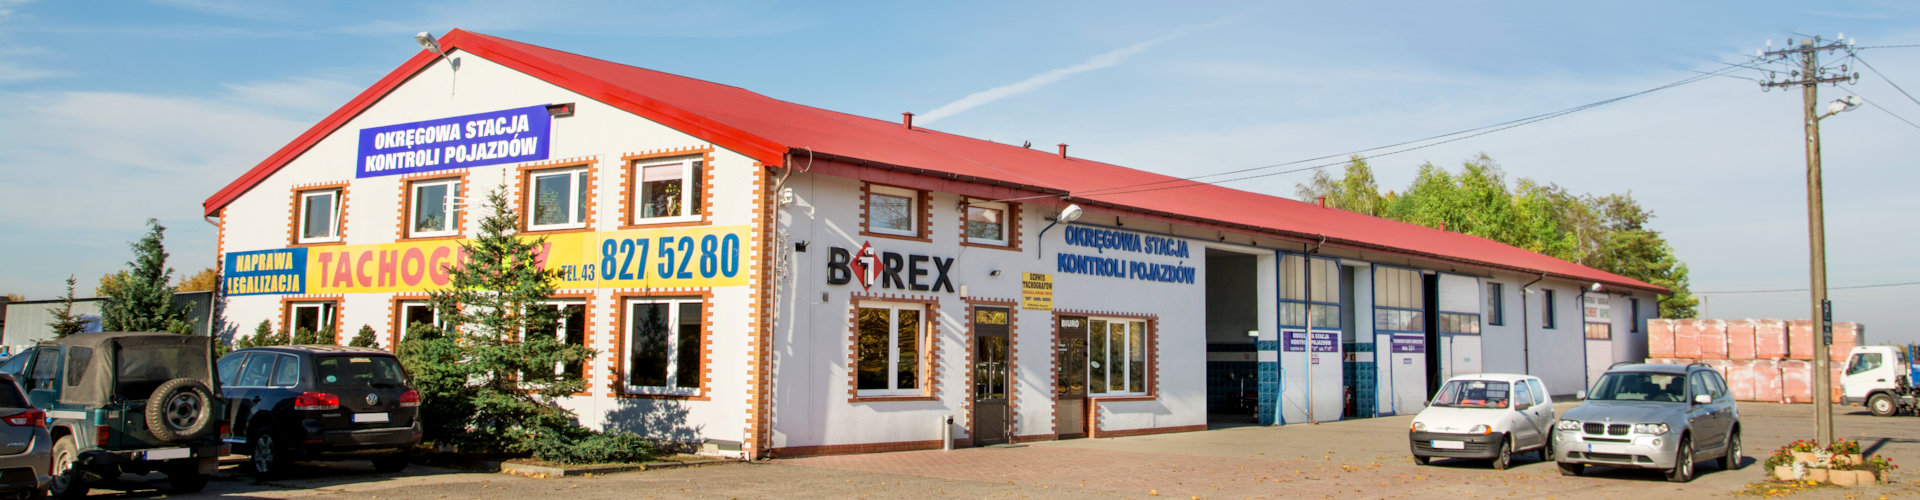 Birex - budynek